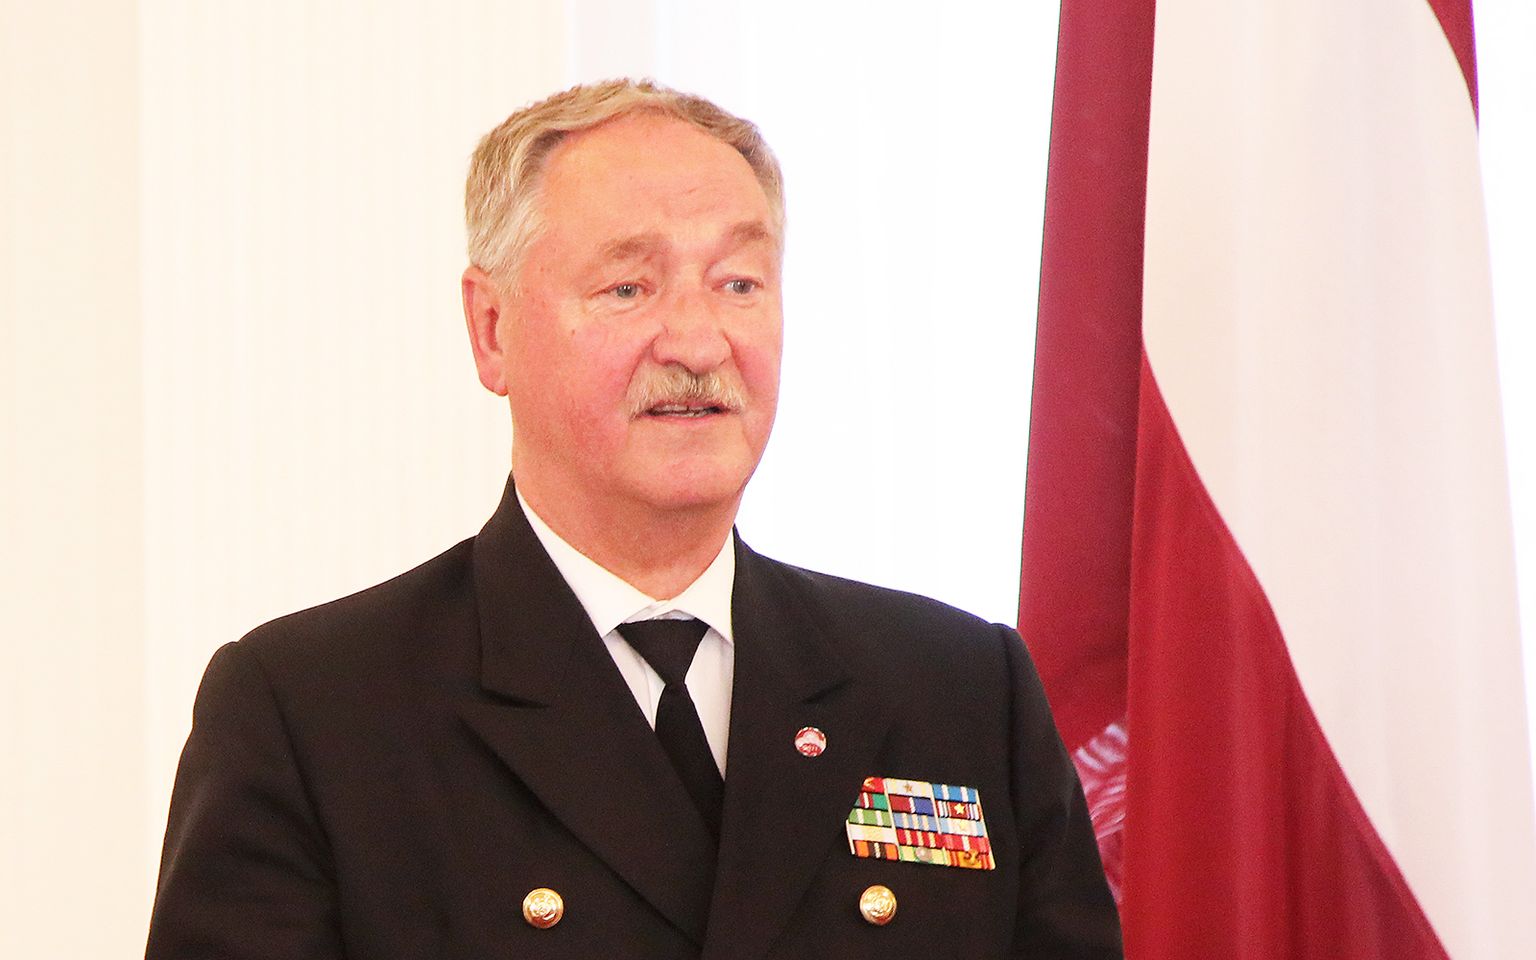 Nacionālo bruņoto spēku komandieris Gaidis Andrejs Zeibots